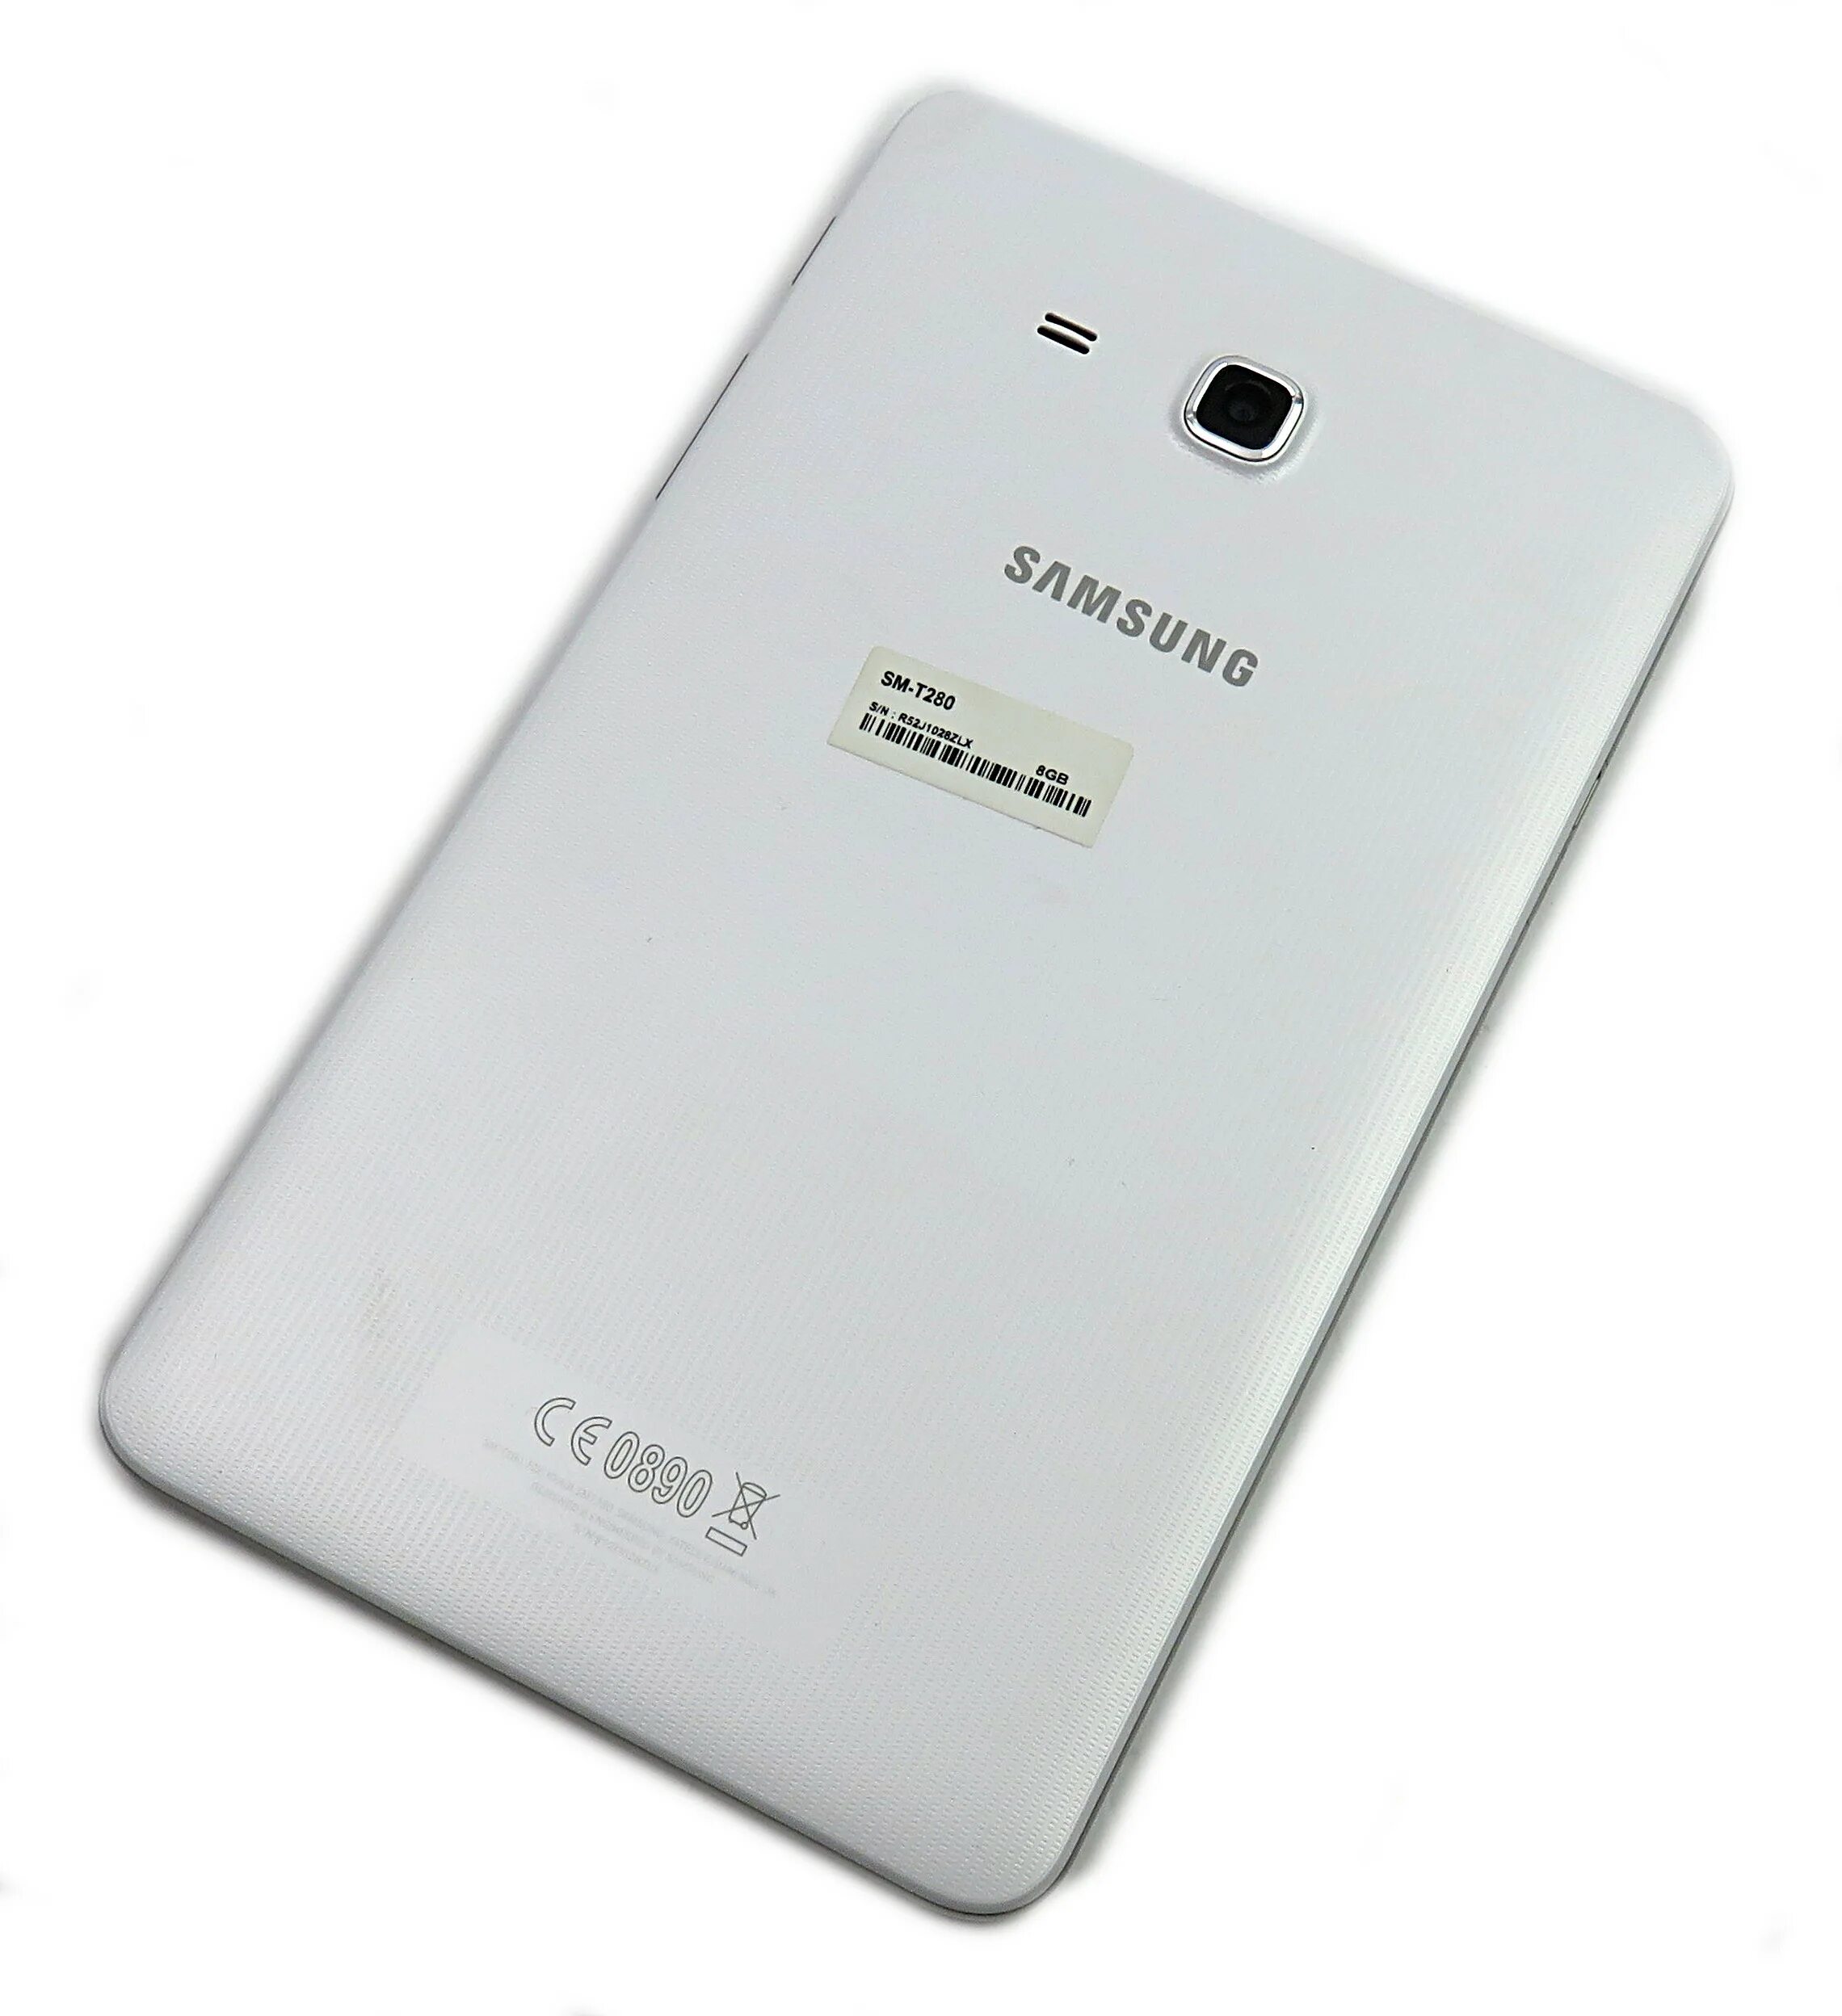 Samsung Galaxy Tab a7 32gb. Планшет Samsung Galaxy Tab 0890 a6. Самсунг галакси таб а7 Лайт. Планшет Samsung Galaxy Tab a7 Lite LTE, 8.7", 32gb.